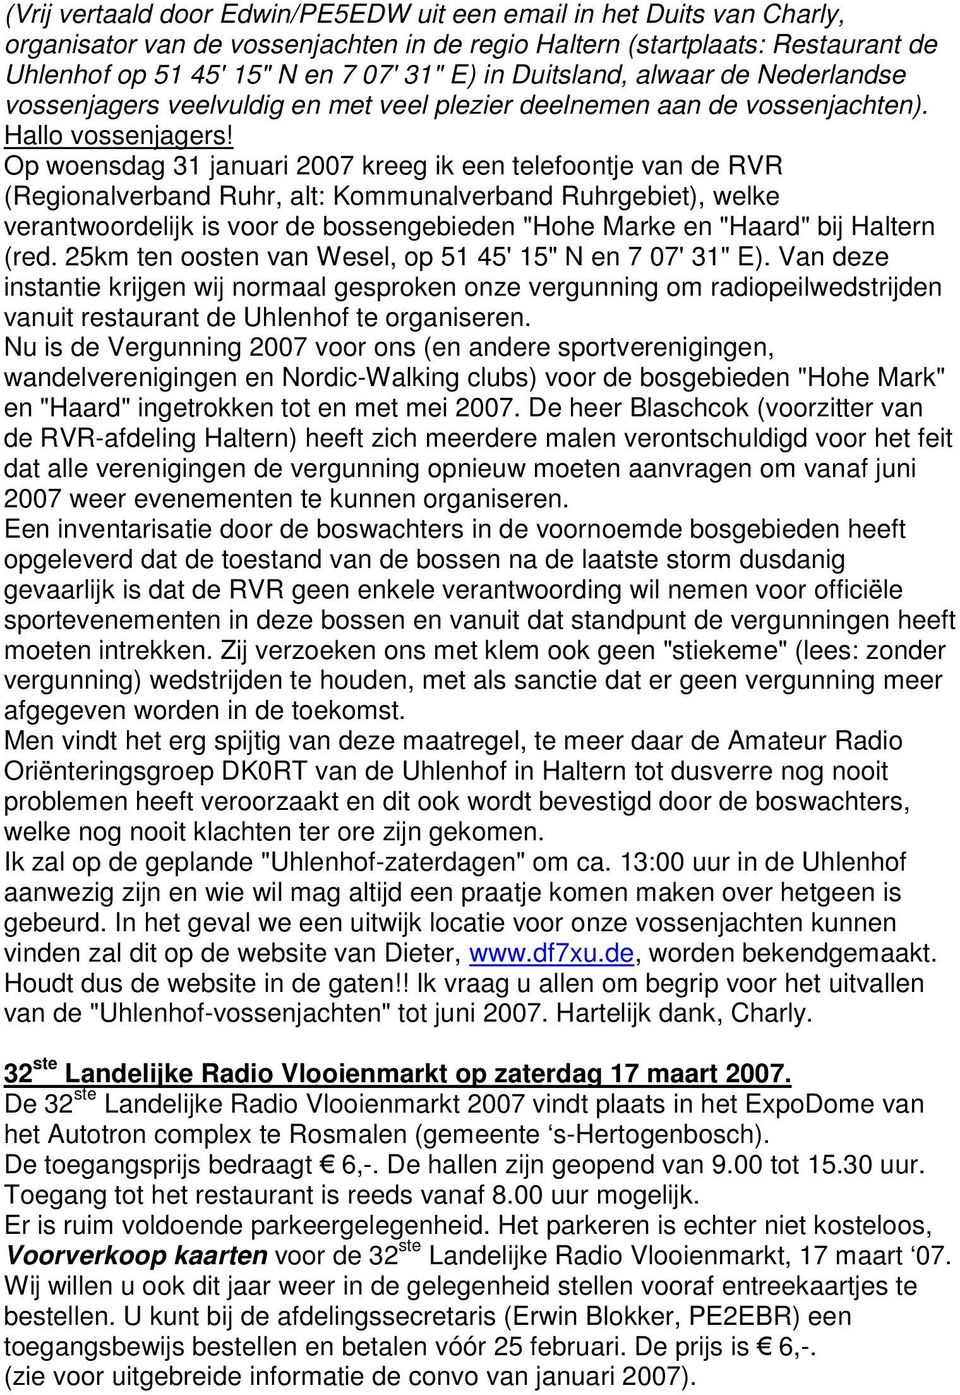 Op woensdag 31 januari 2007 kreeg ik een telefoontje van de RVR (Regionalverband Ruhr, alt: Kommunalverband Ruhrgebiet), welke verantwoordelijk is voor de bossengebieden "Hohe Marke en "Haard" bij